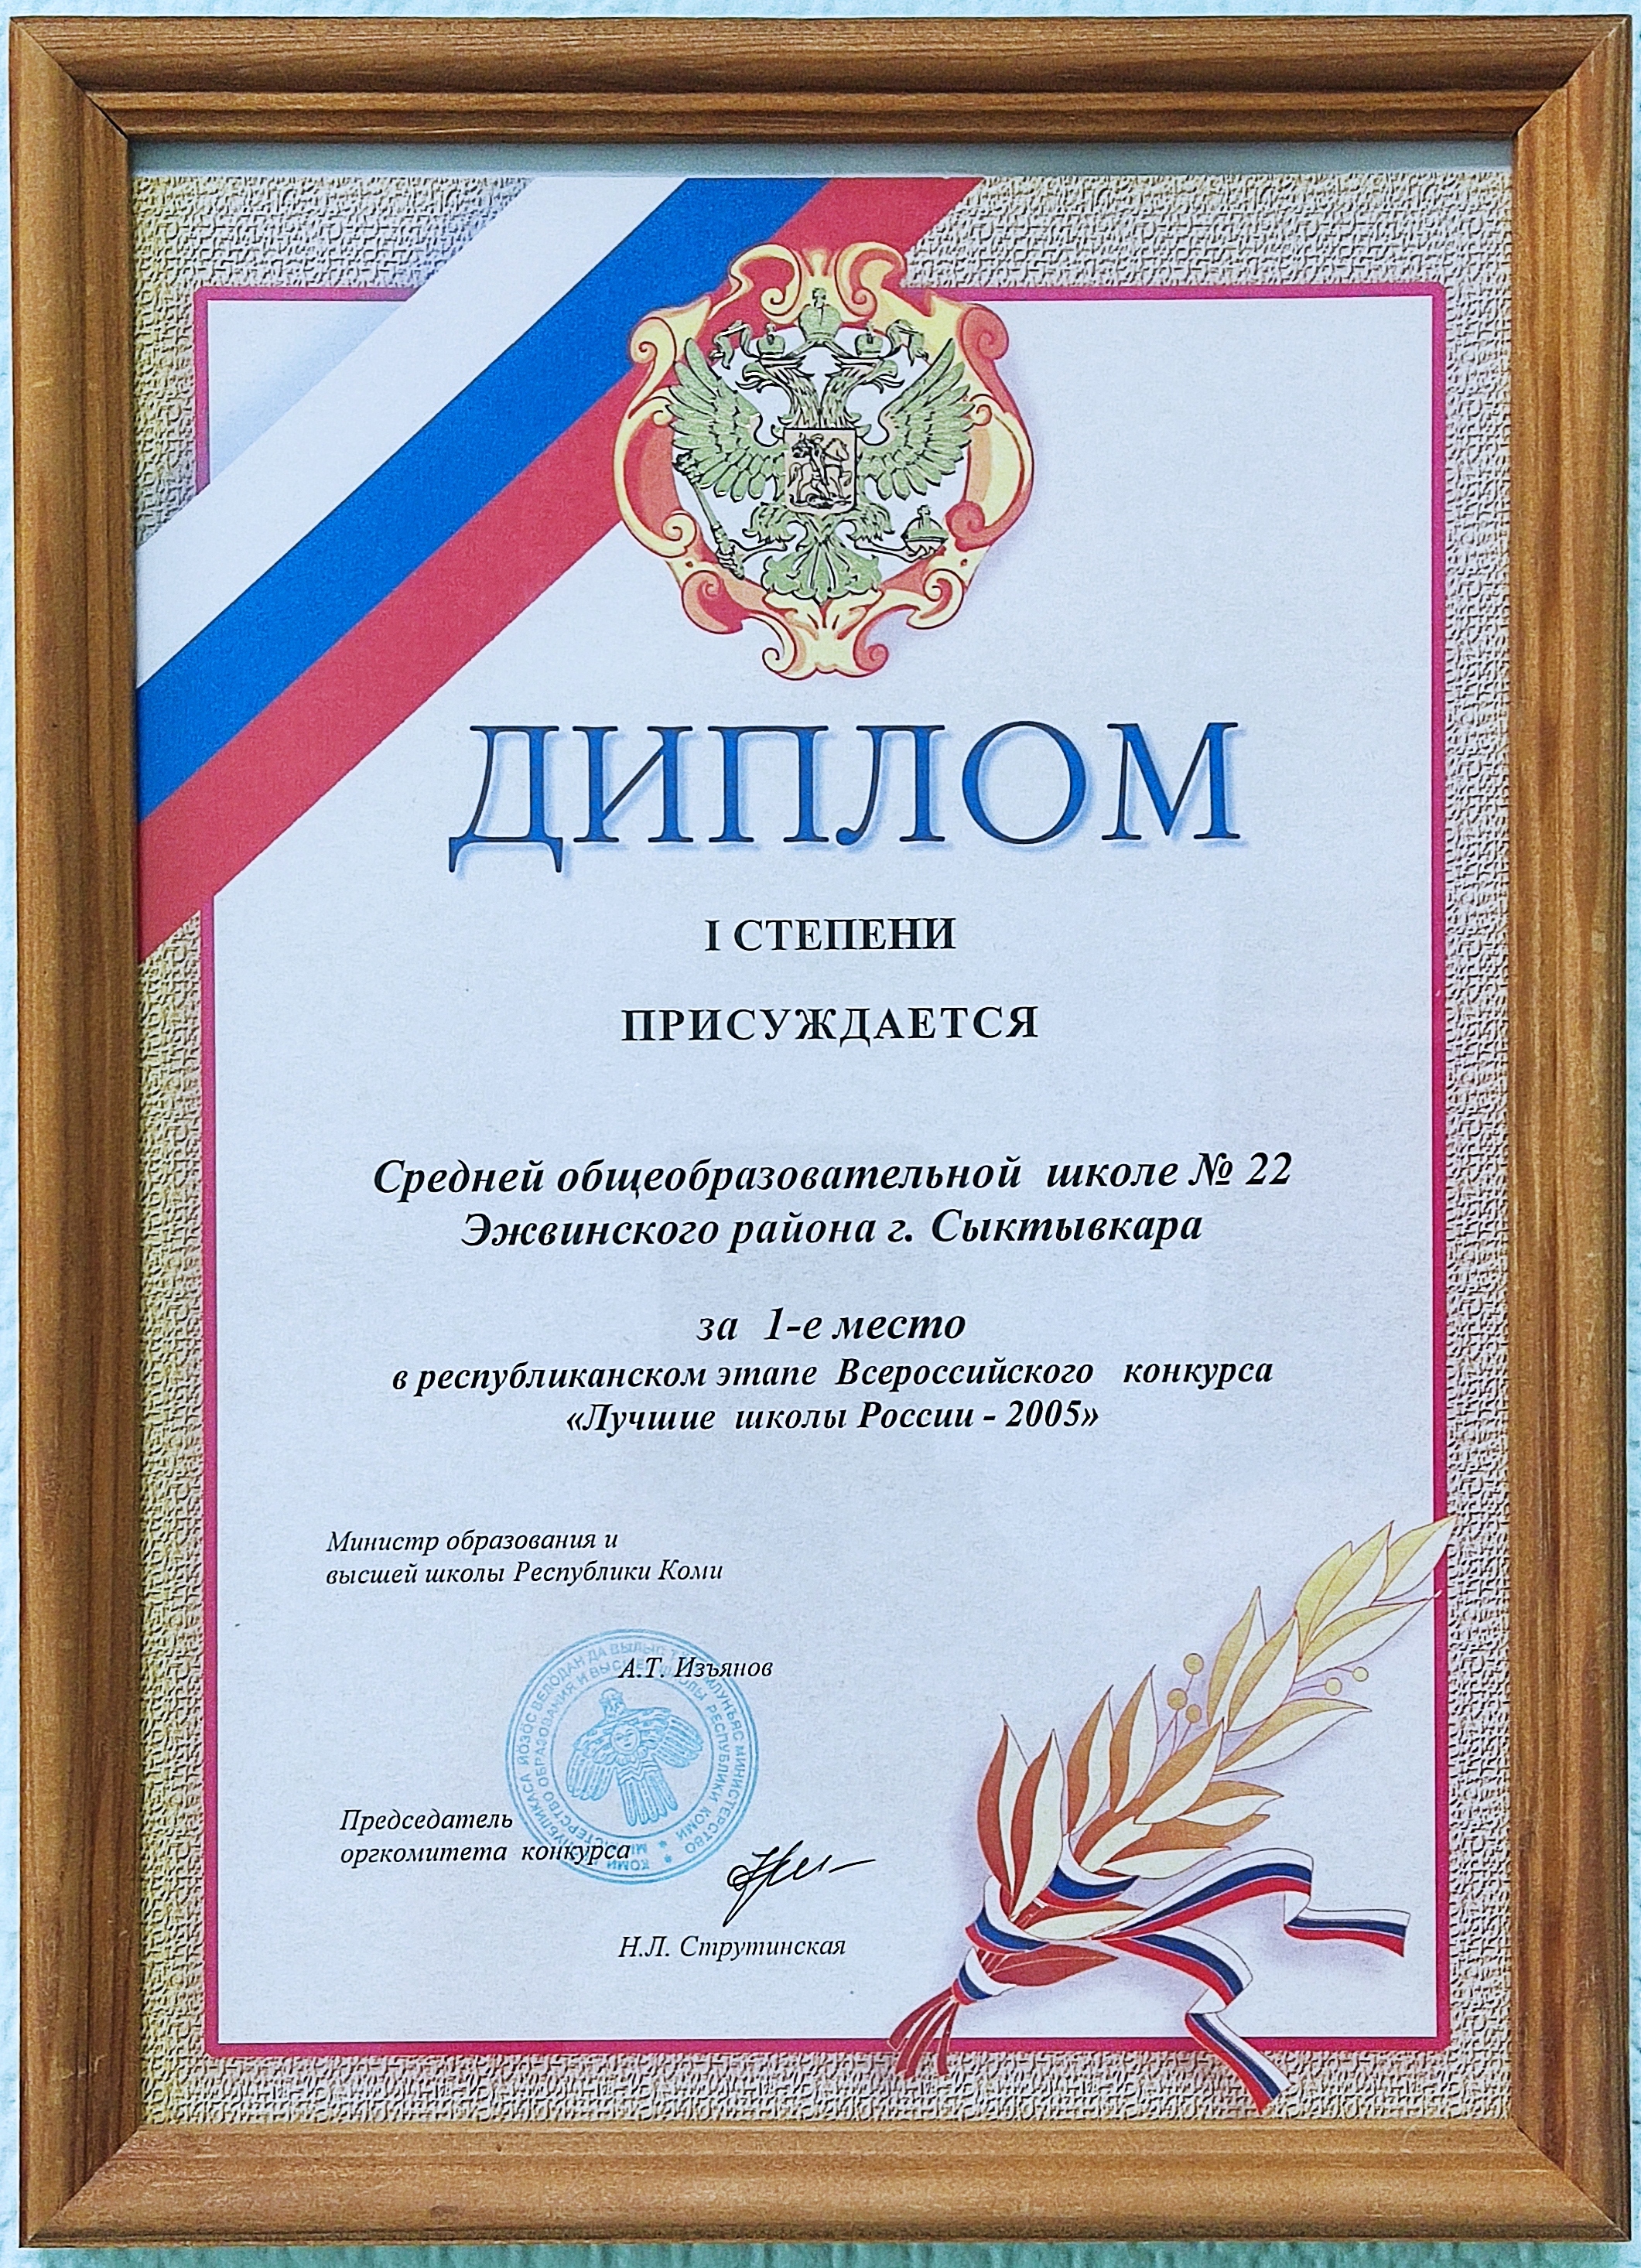 Диплом I степени за 1 место "Лучшие школы России - 2005"